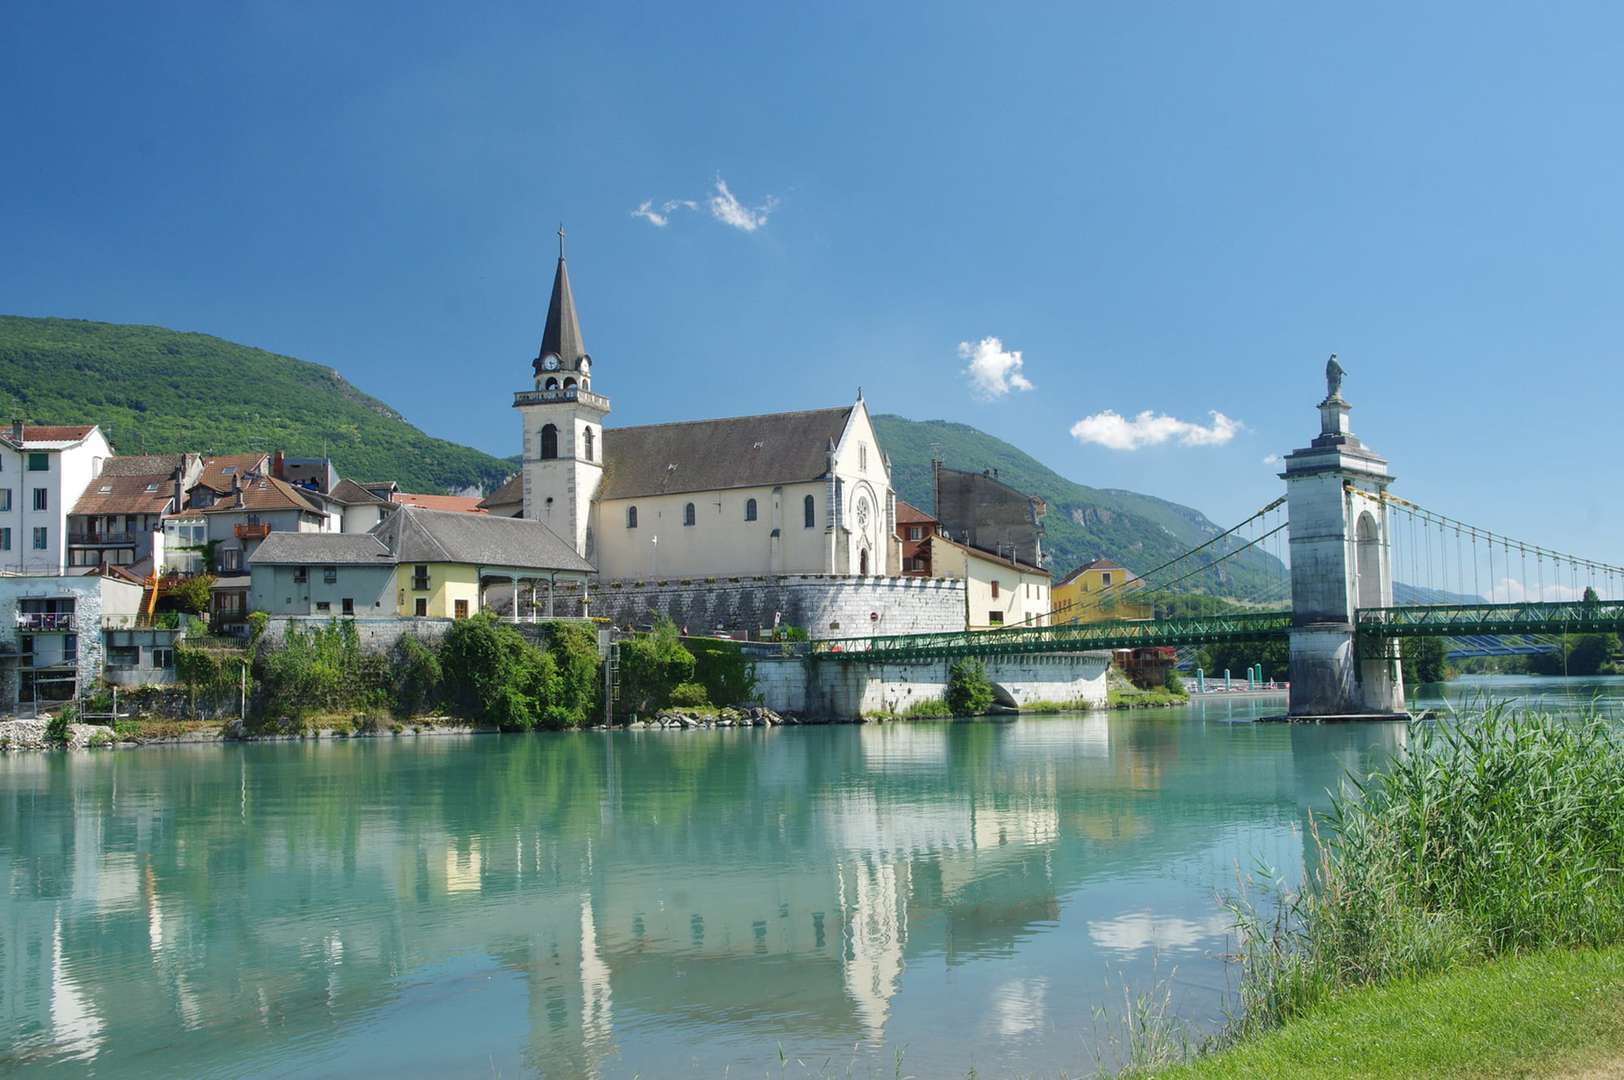 Radreise Schweiz Frankreich Rhoneradweg - Fluss mit alter Brücke und Blick auf Kirche